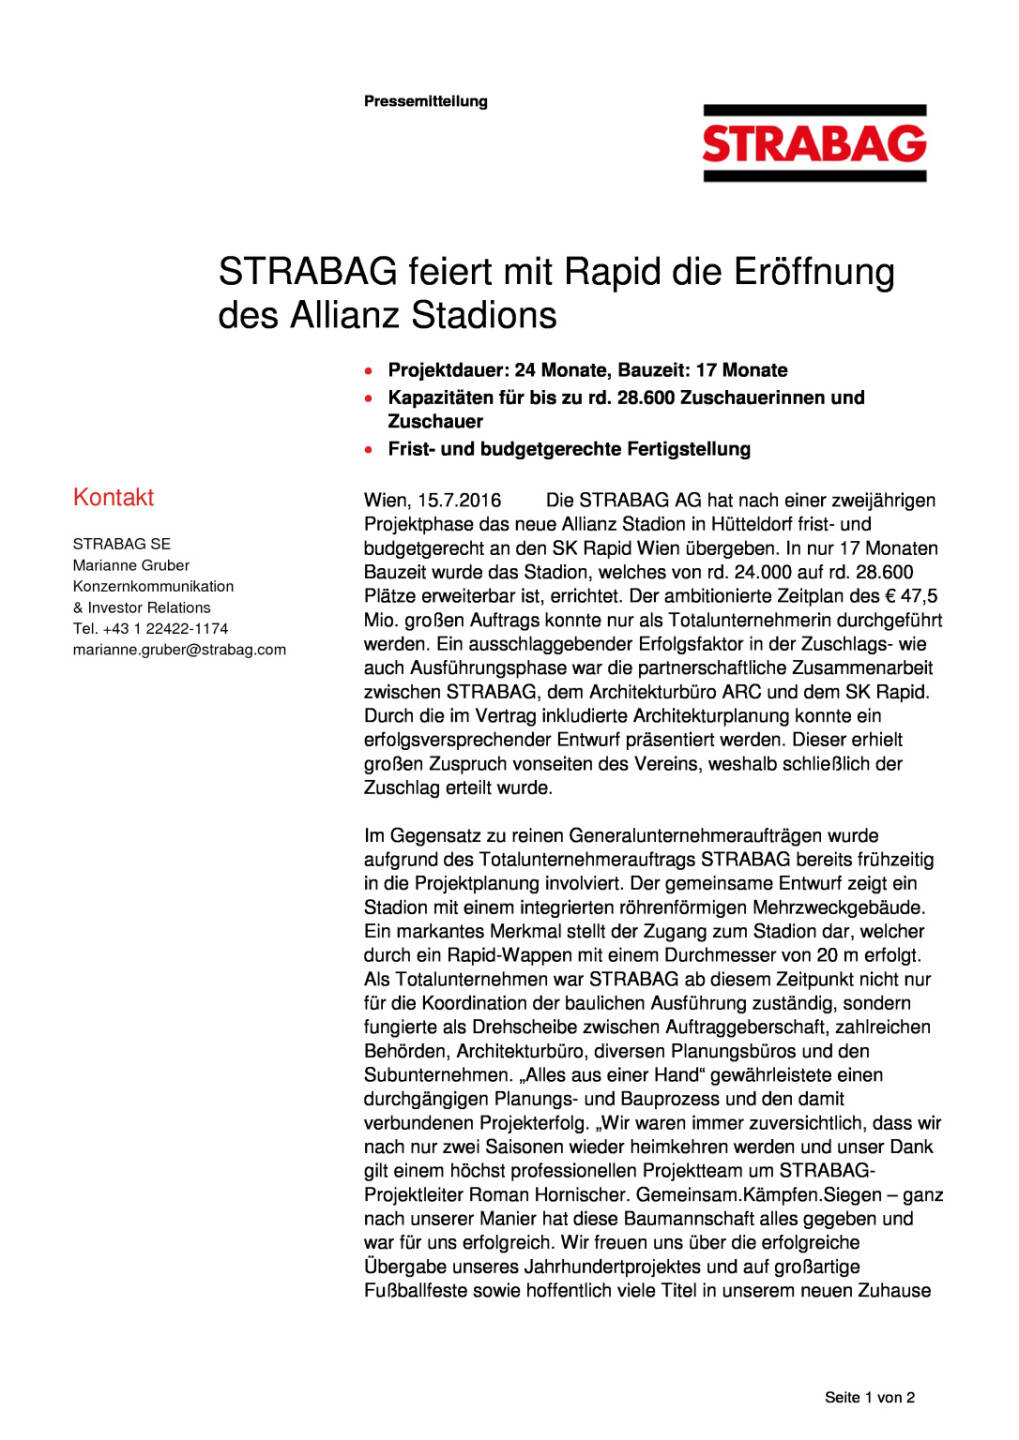 Strabag feiert mit Rapid die Eröffnung des Allianz Stadions, Seite 1/2, komplettes Dokument unter http://boerse-social.com/static/uploads/file_1424_strabag_feiert_mit_rapid_die_eroffnung_des_allianz_stadions.pdf